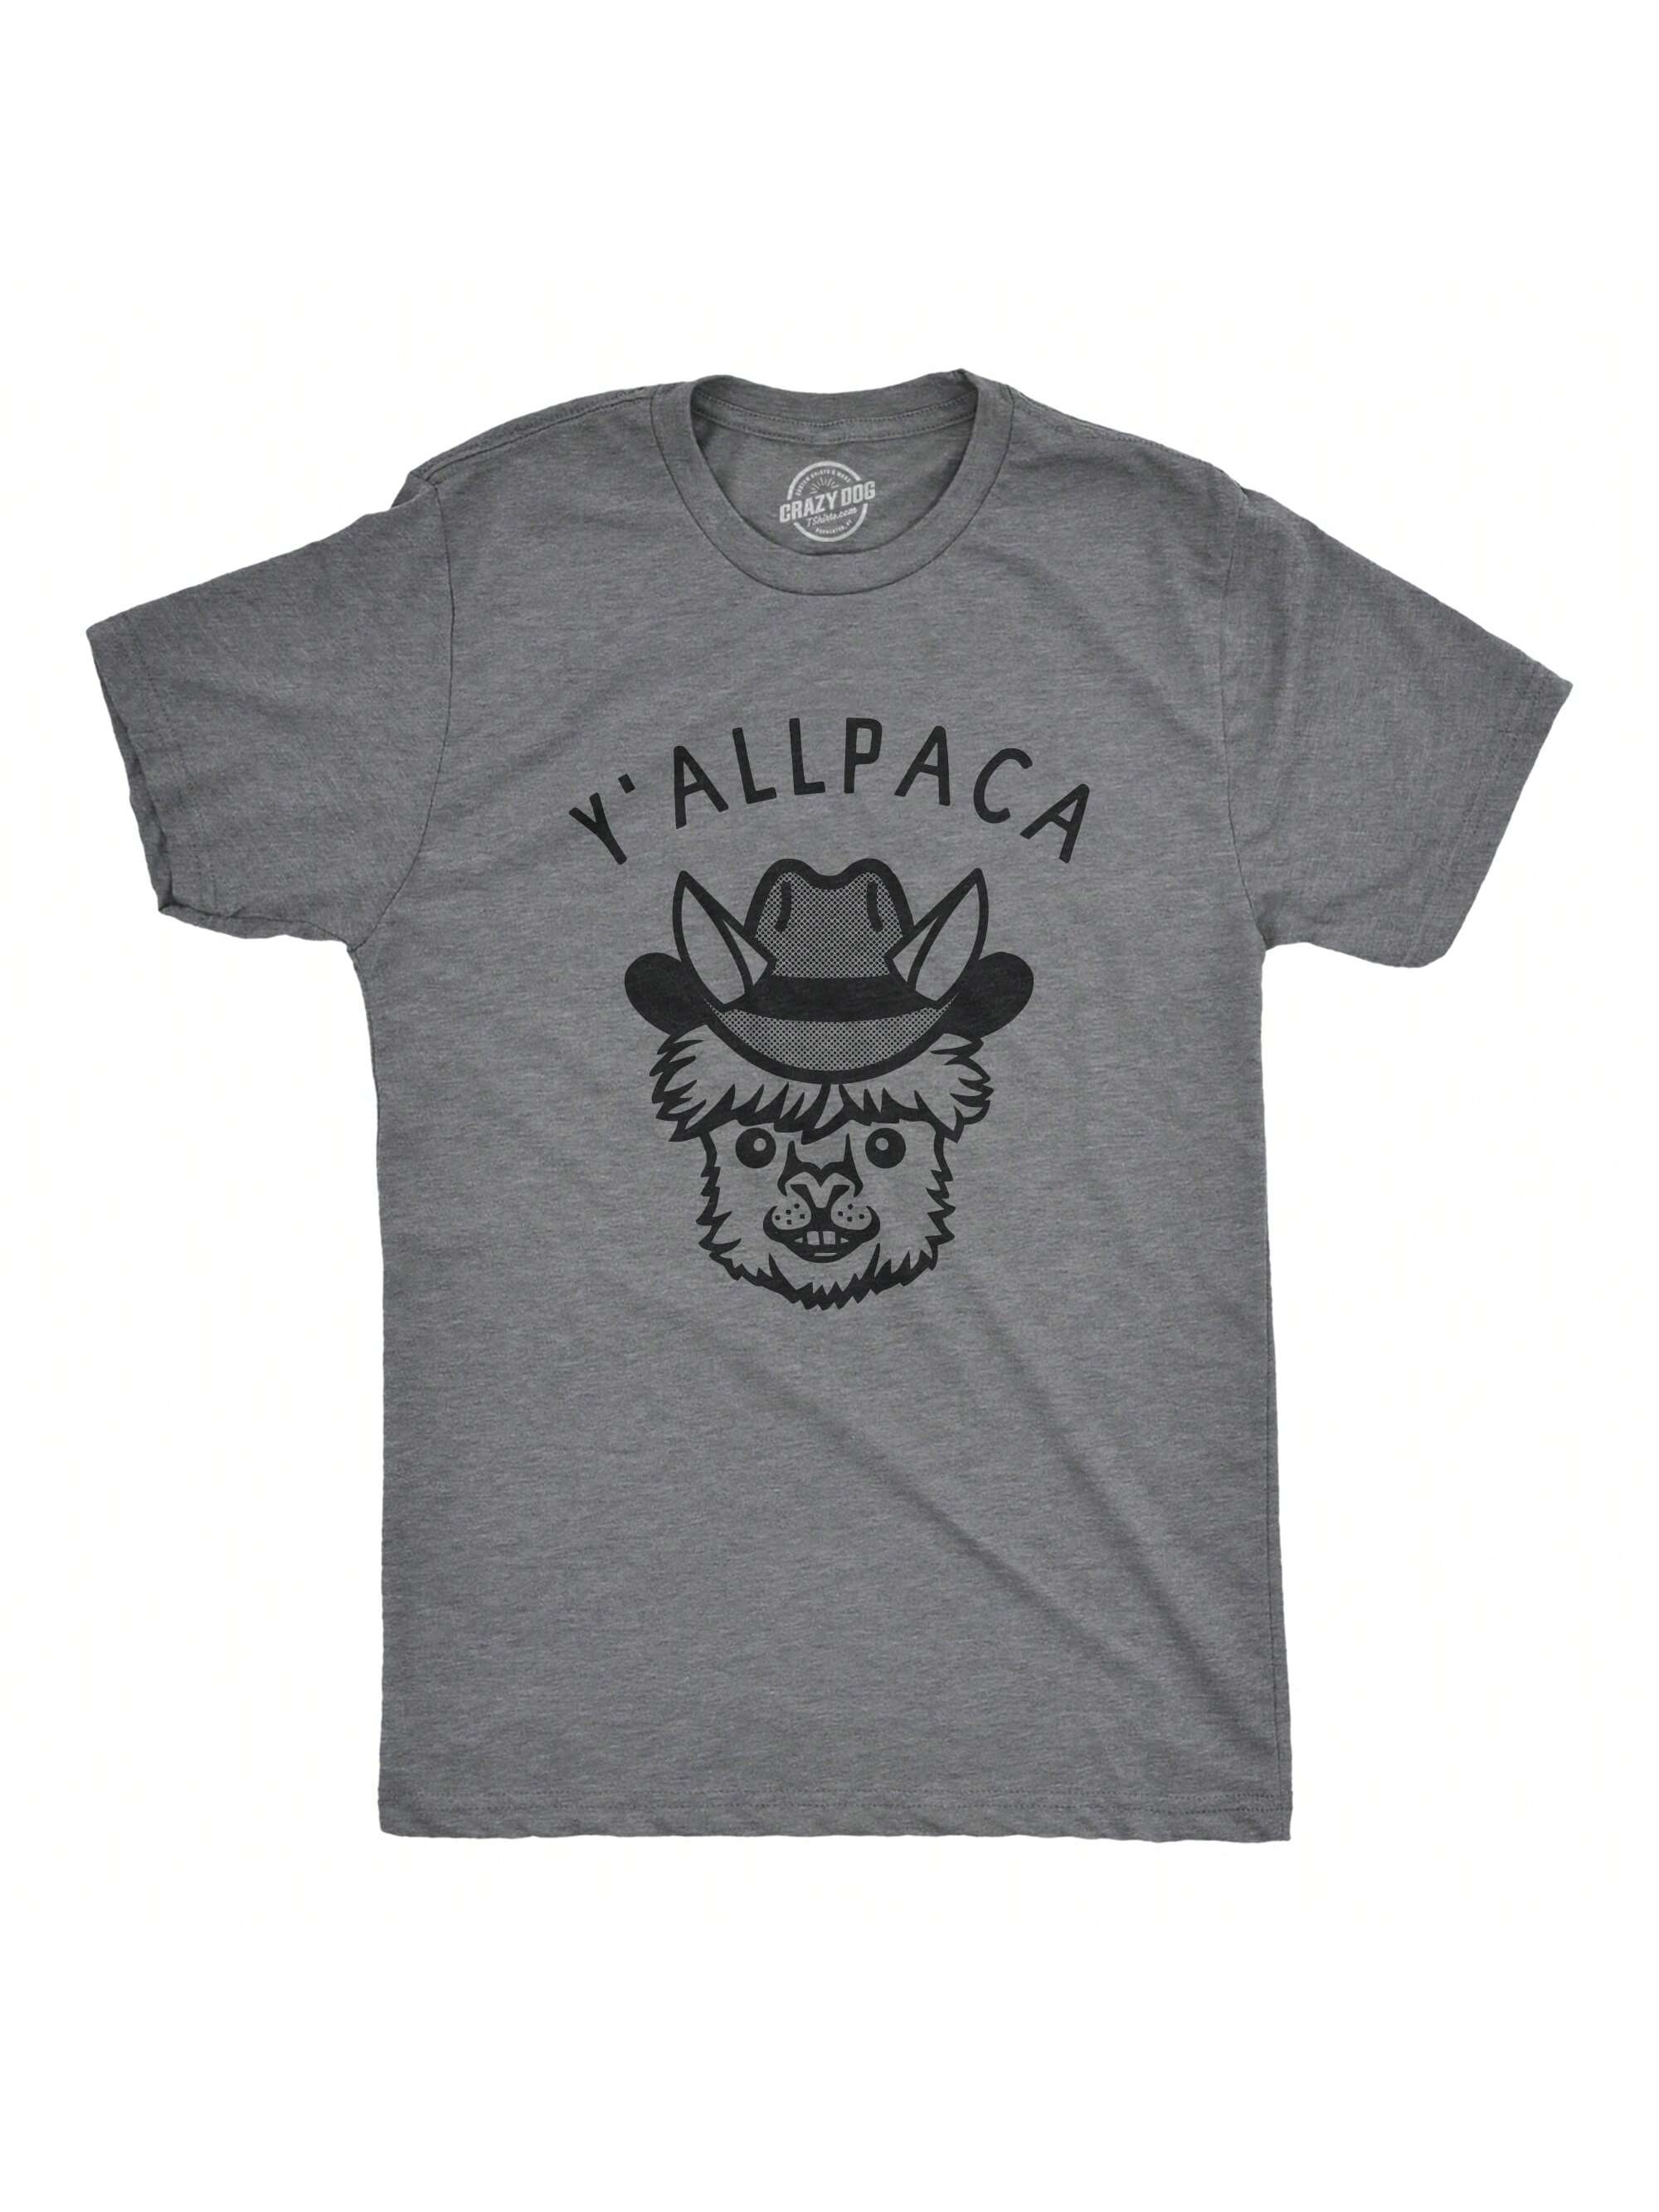 Мужская футболка «Nature Calls» с забавной саркастической надписью «Медведь какает», темно-серый вереск - yallpaca мужская футболка медведь l черный